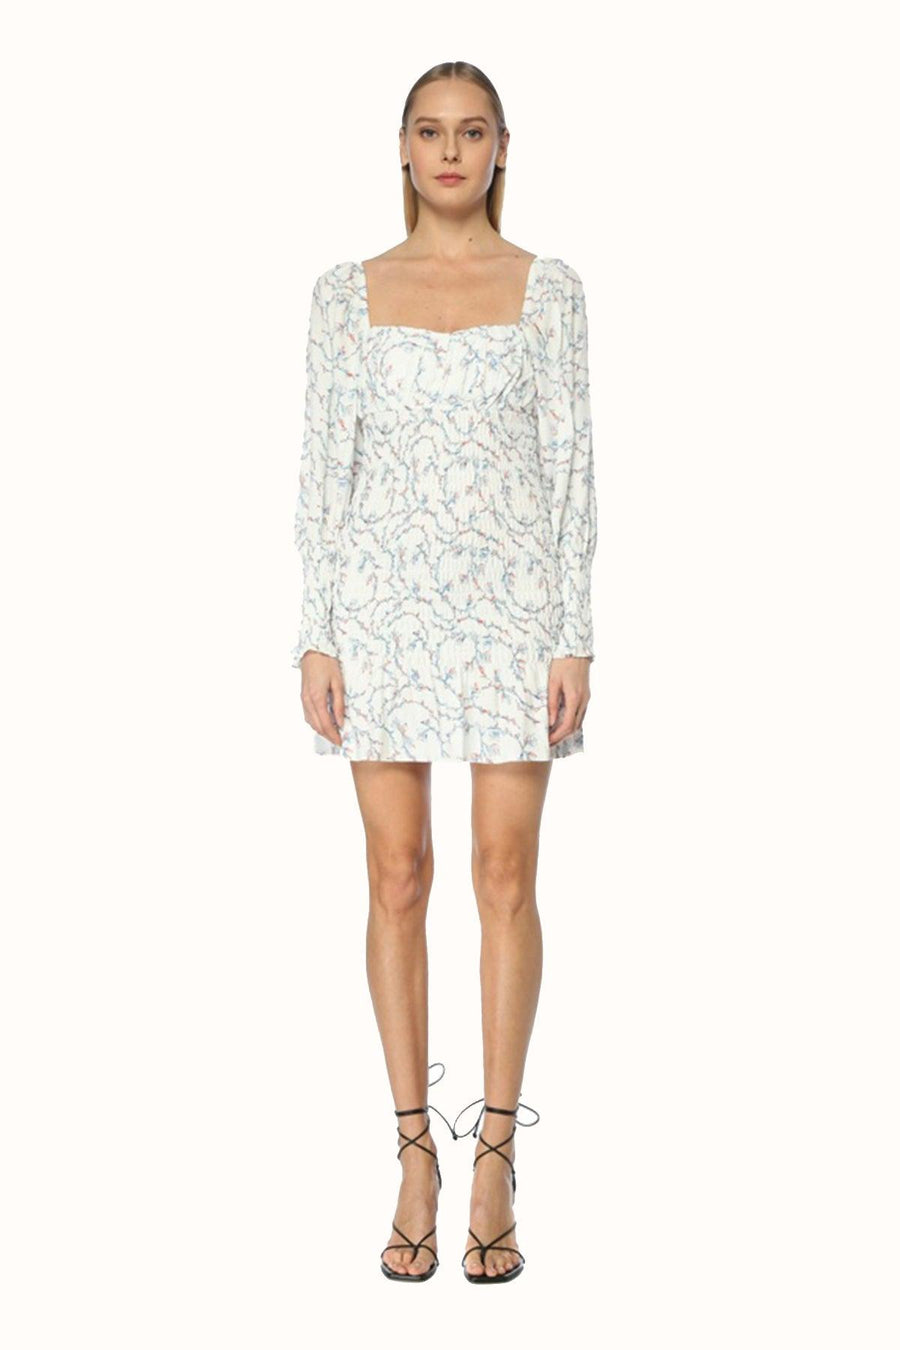 Zella Elbise / Beyaz Çiçekli - NAIA ISTANBUL Shop Online